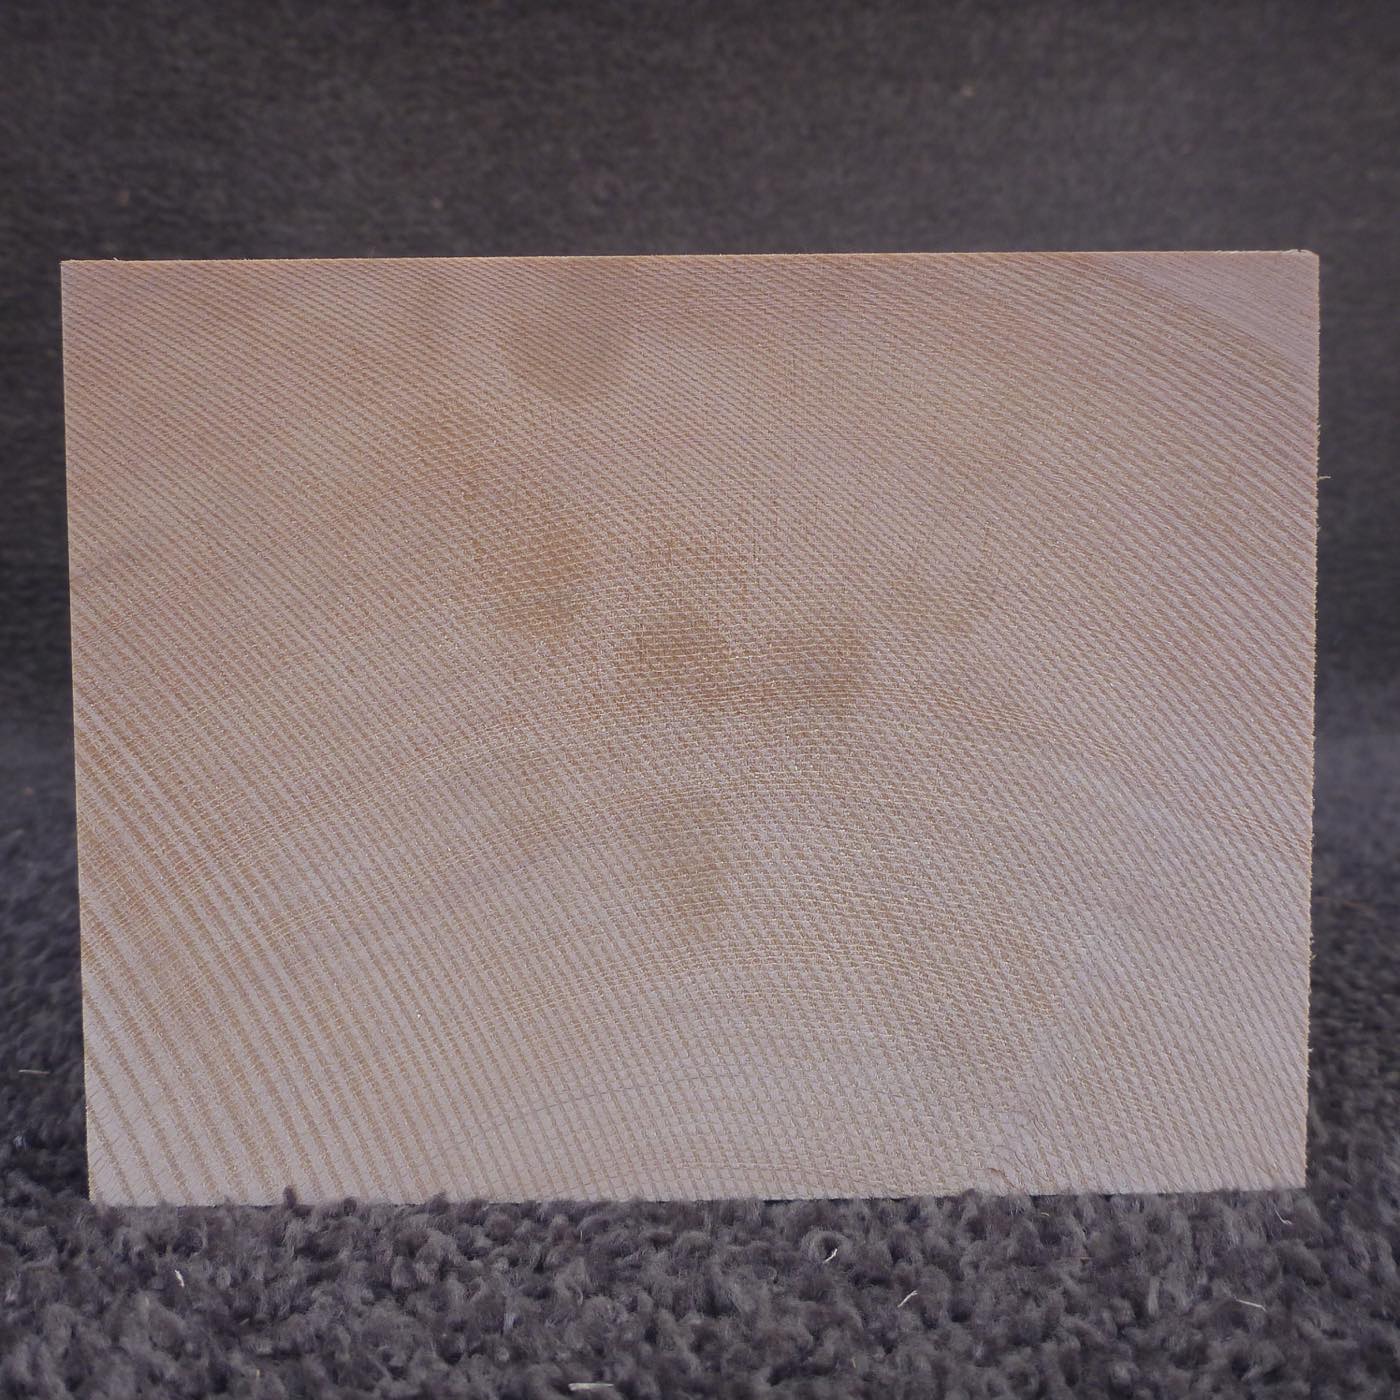 彫刻材 天然木曽檜 柾目盤 L600×T110×W145mm 2A110145 定番商品